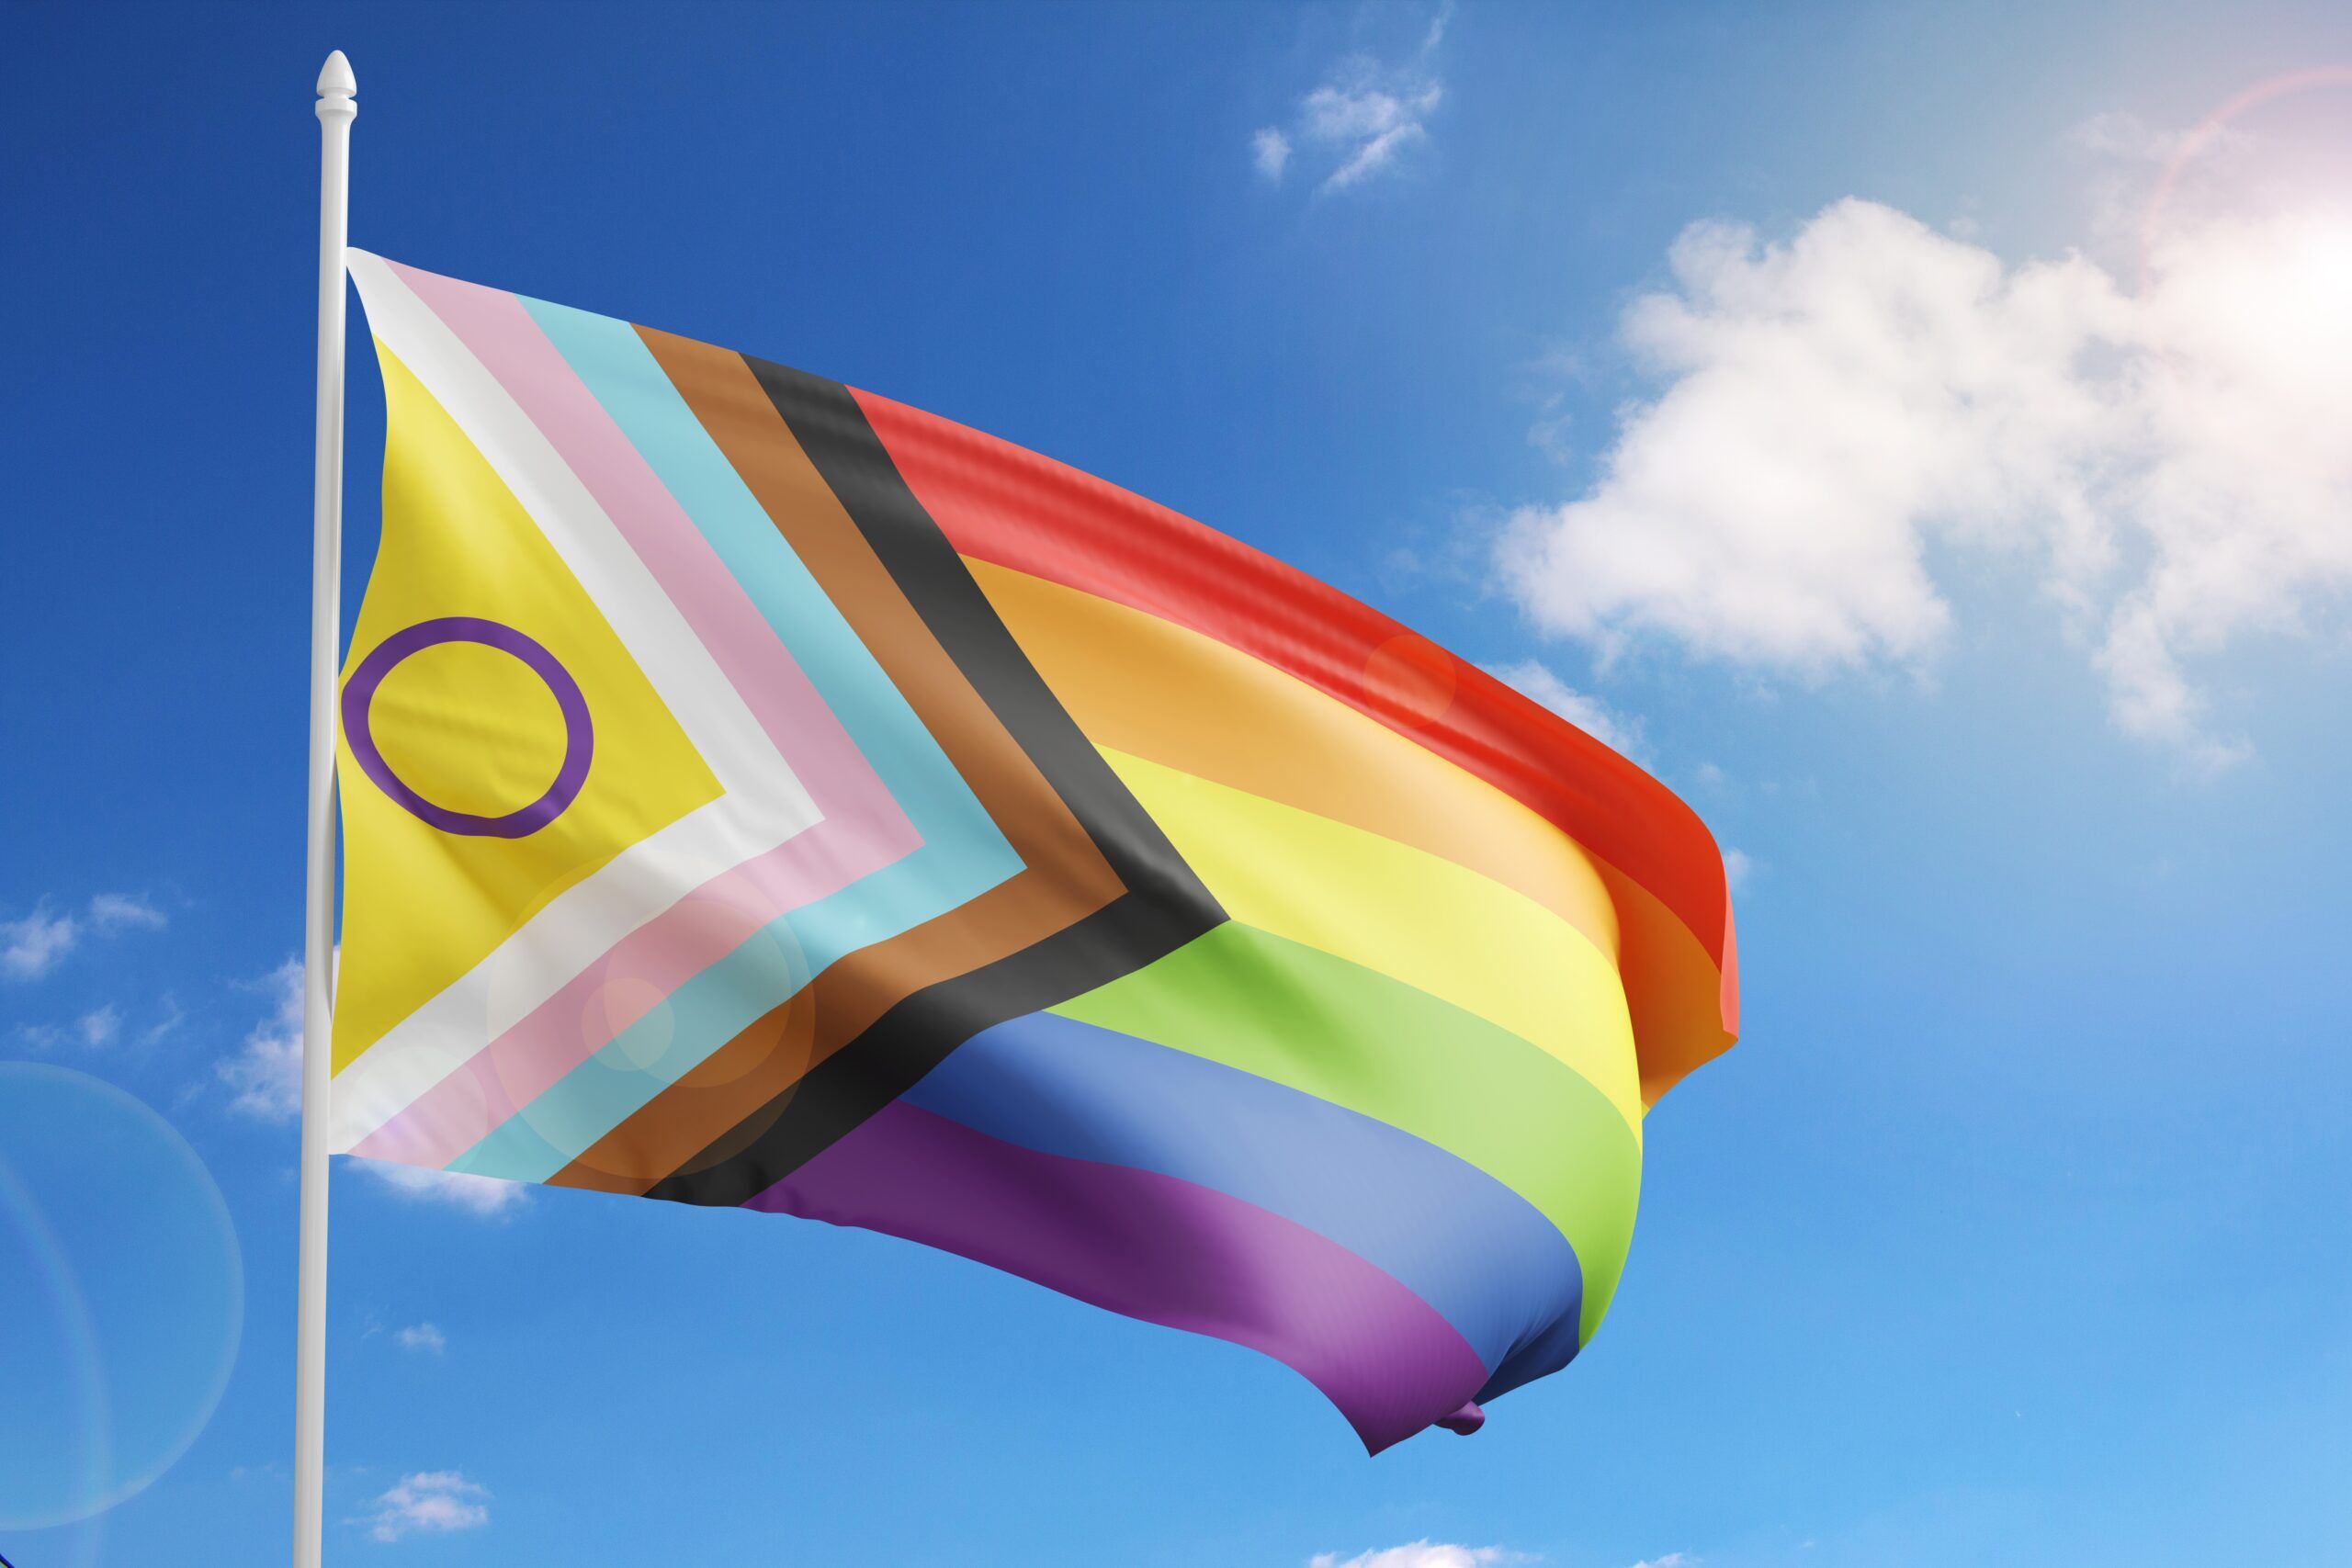 The intersex-inclusive Progressive Pride flag